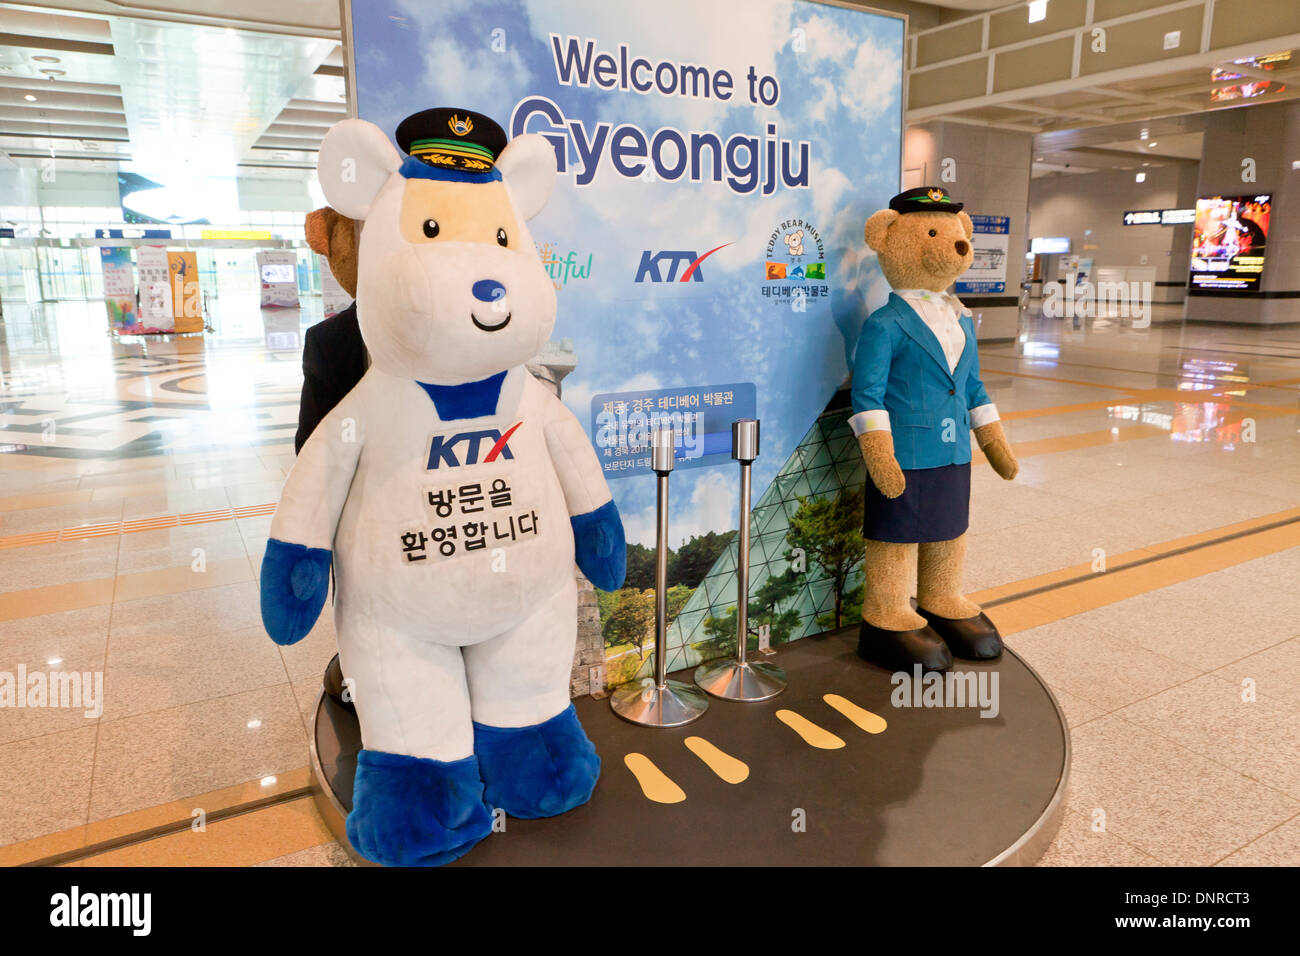 Welcome sign at Gyeongju KTX train station - North Gyeongsang province, South Korea Stock Photo